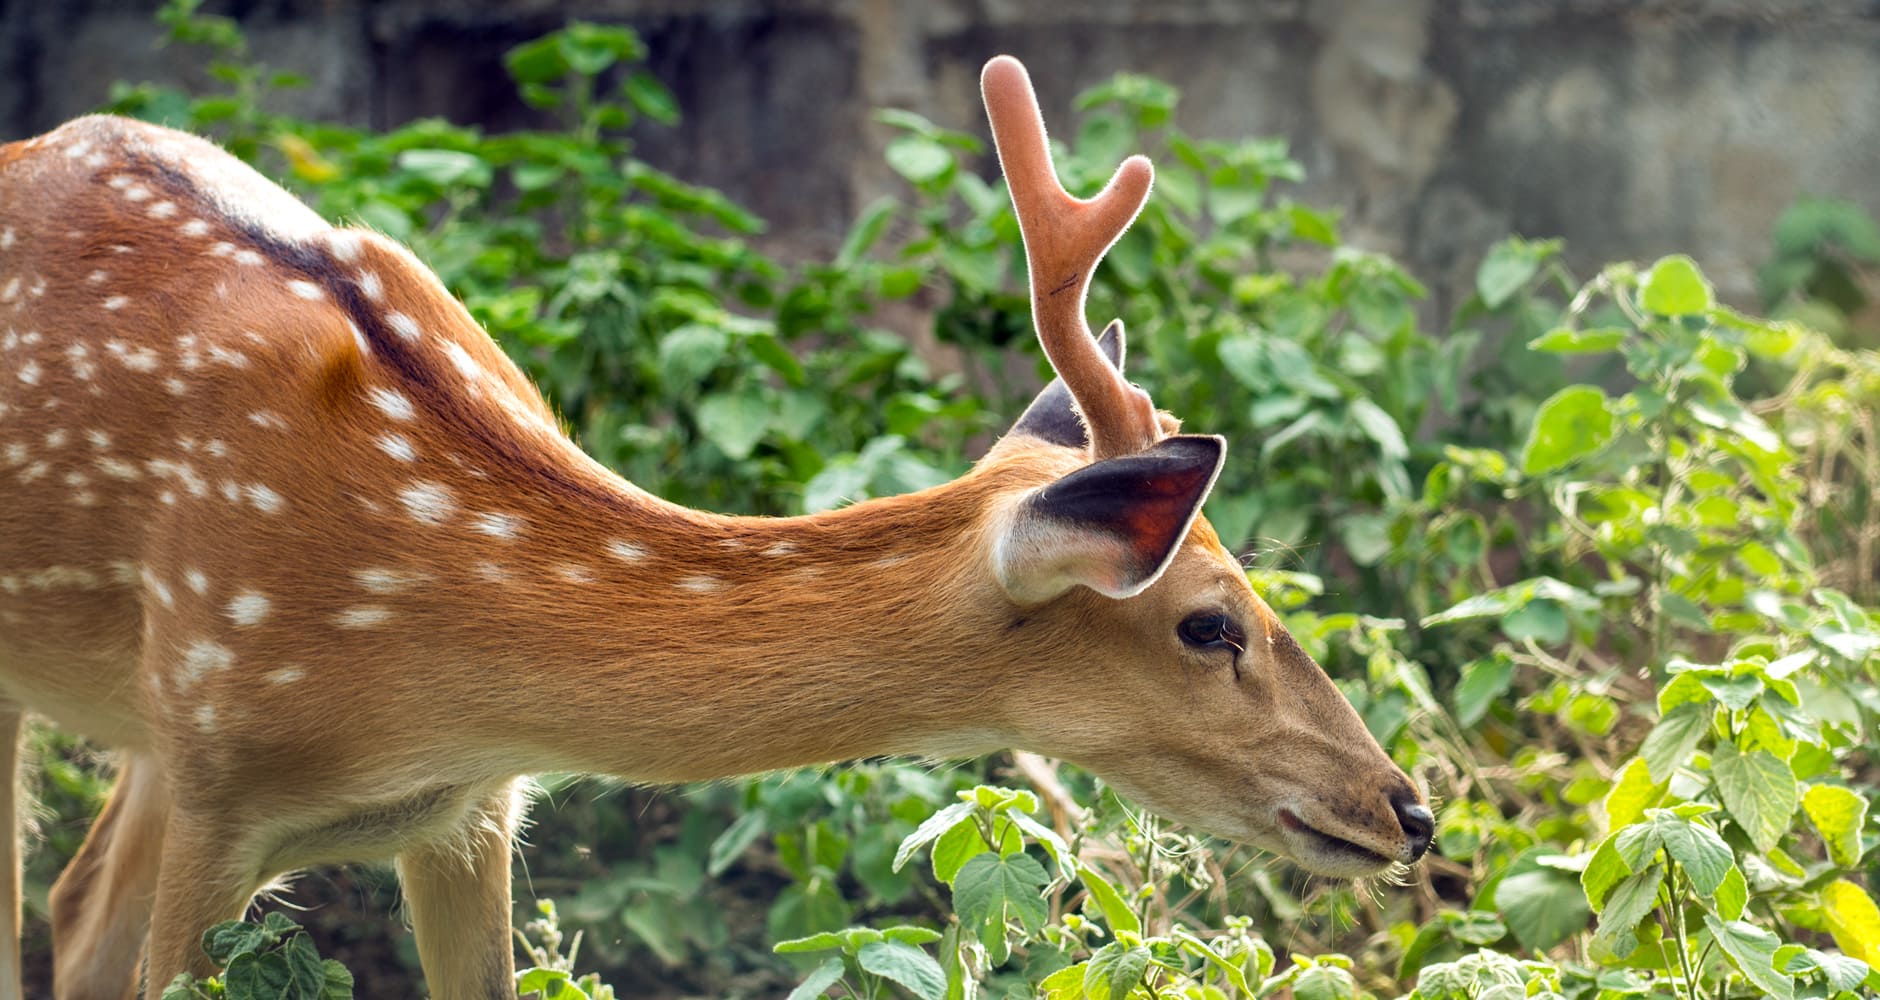 Deer resistant plants - photo of deer eating a plant